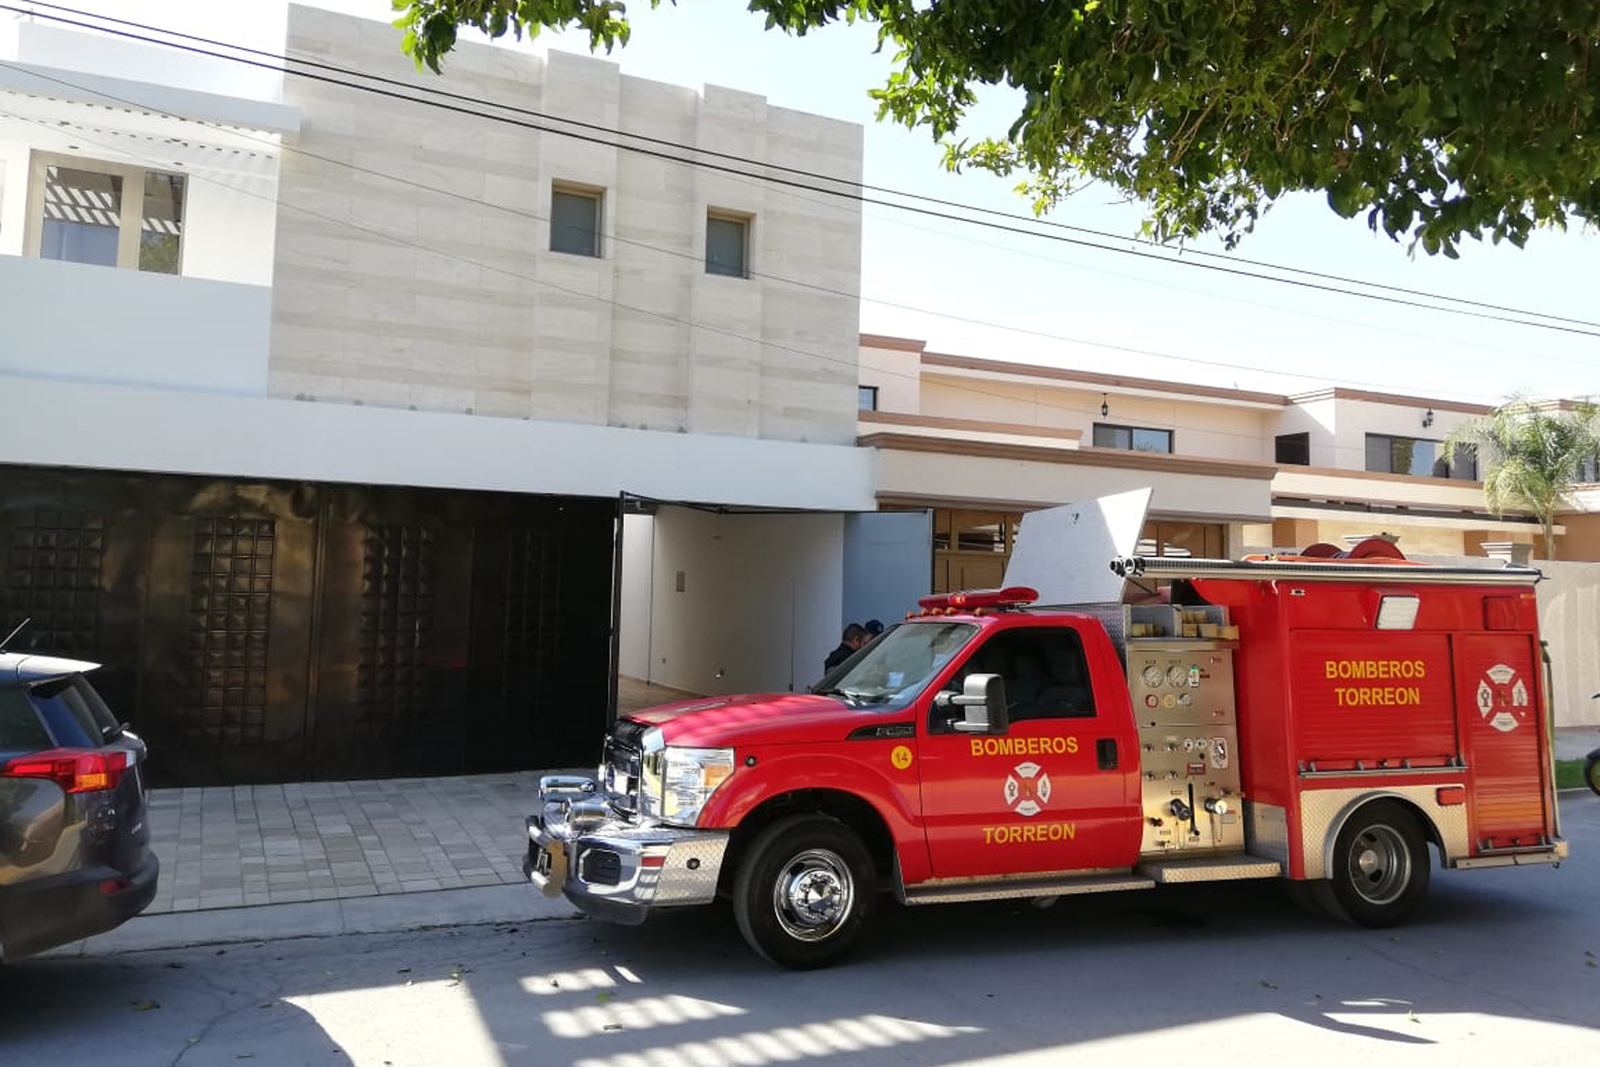 Distintas corporaciones de rescate y seguridad de la ciudad acudieron al domicilio del accidente, ubicado en Torreón Jardín.